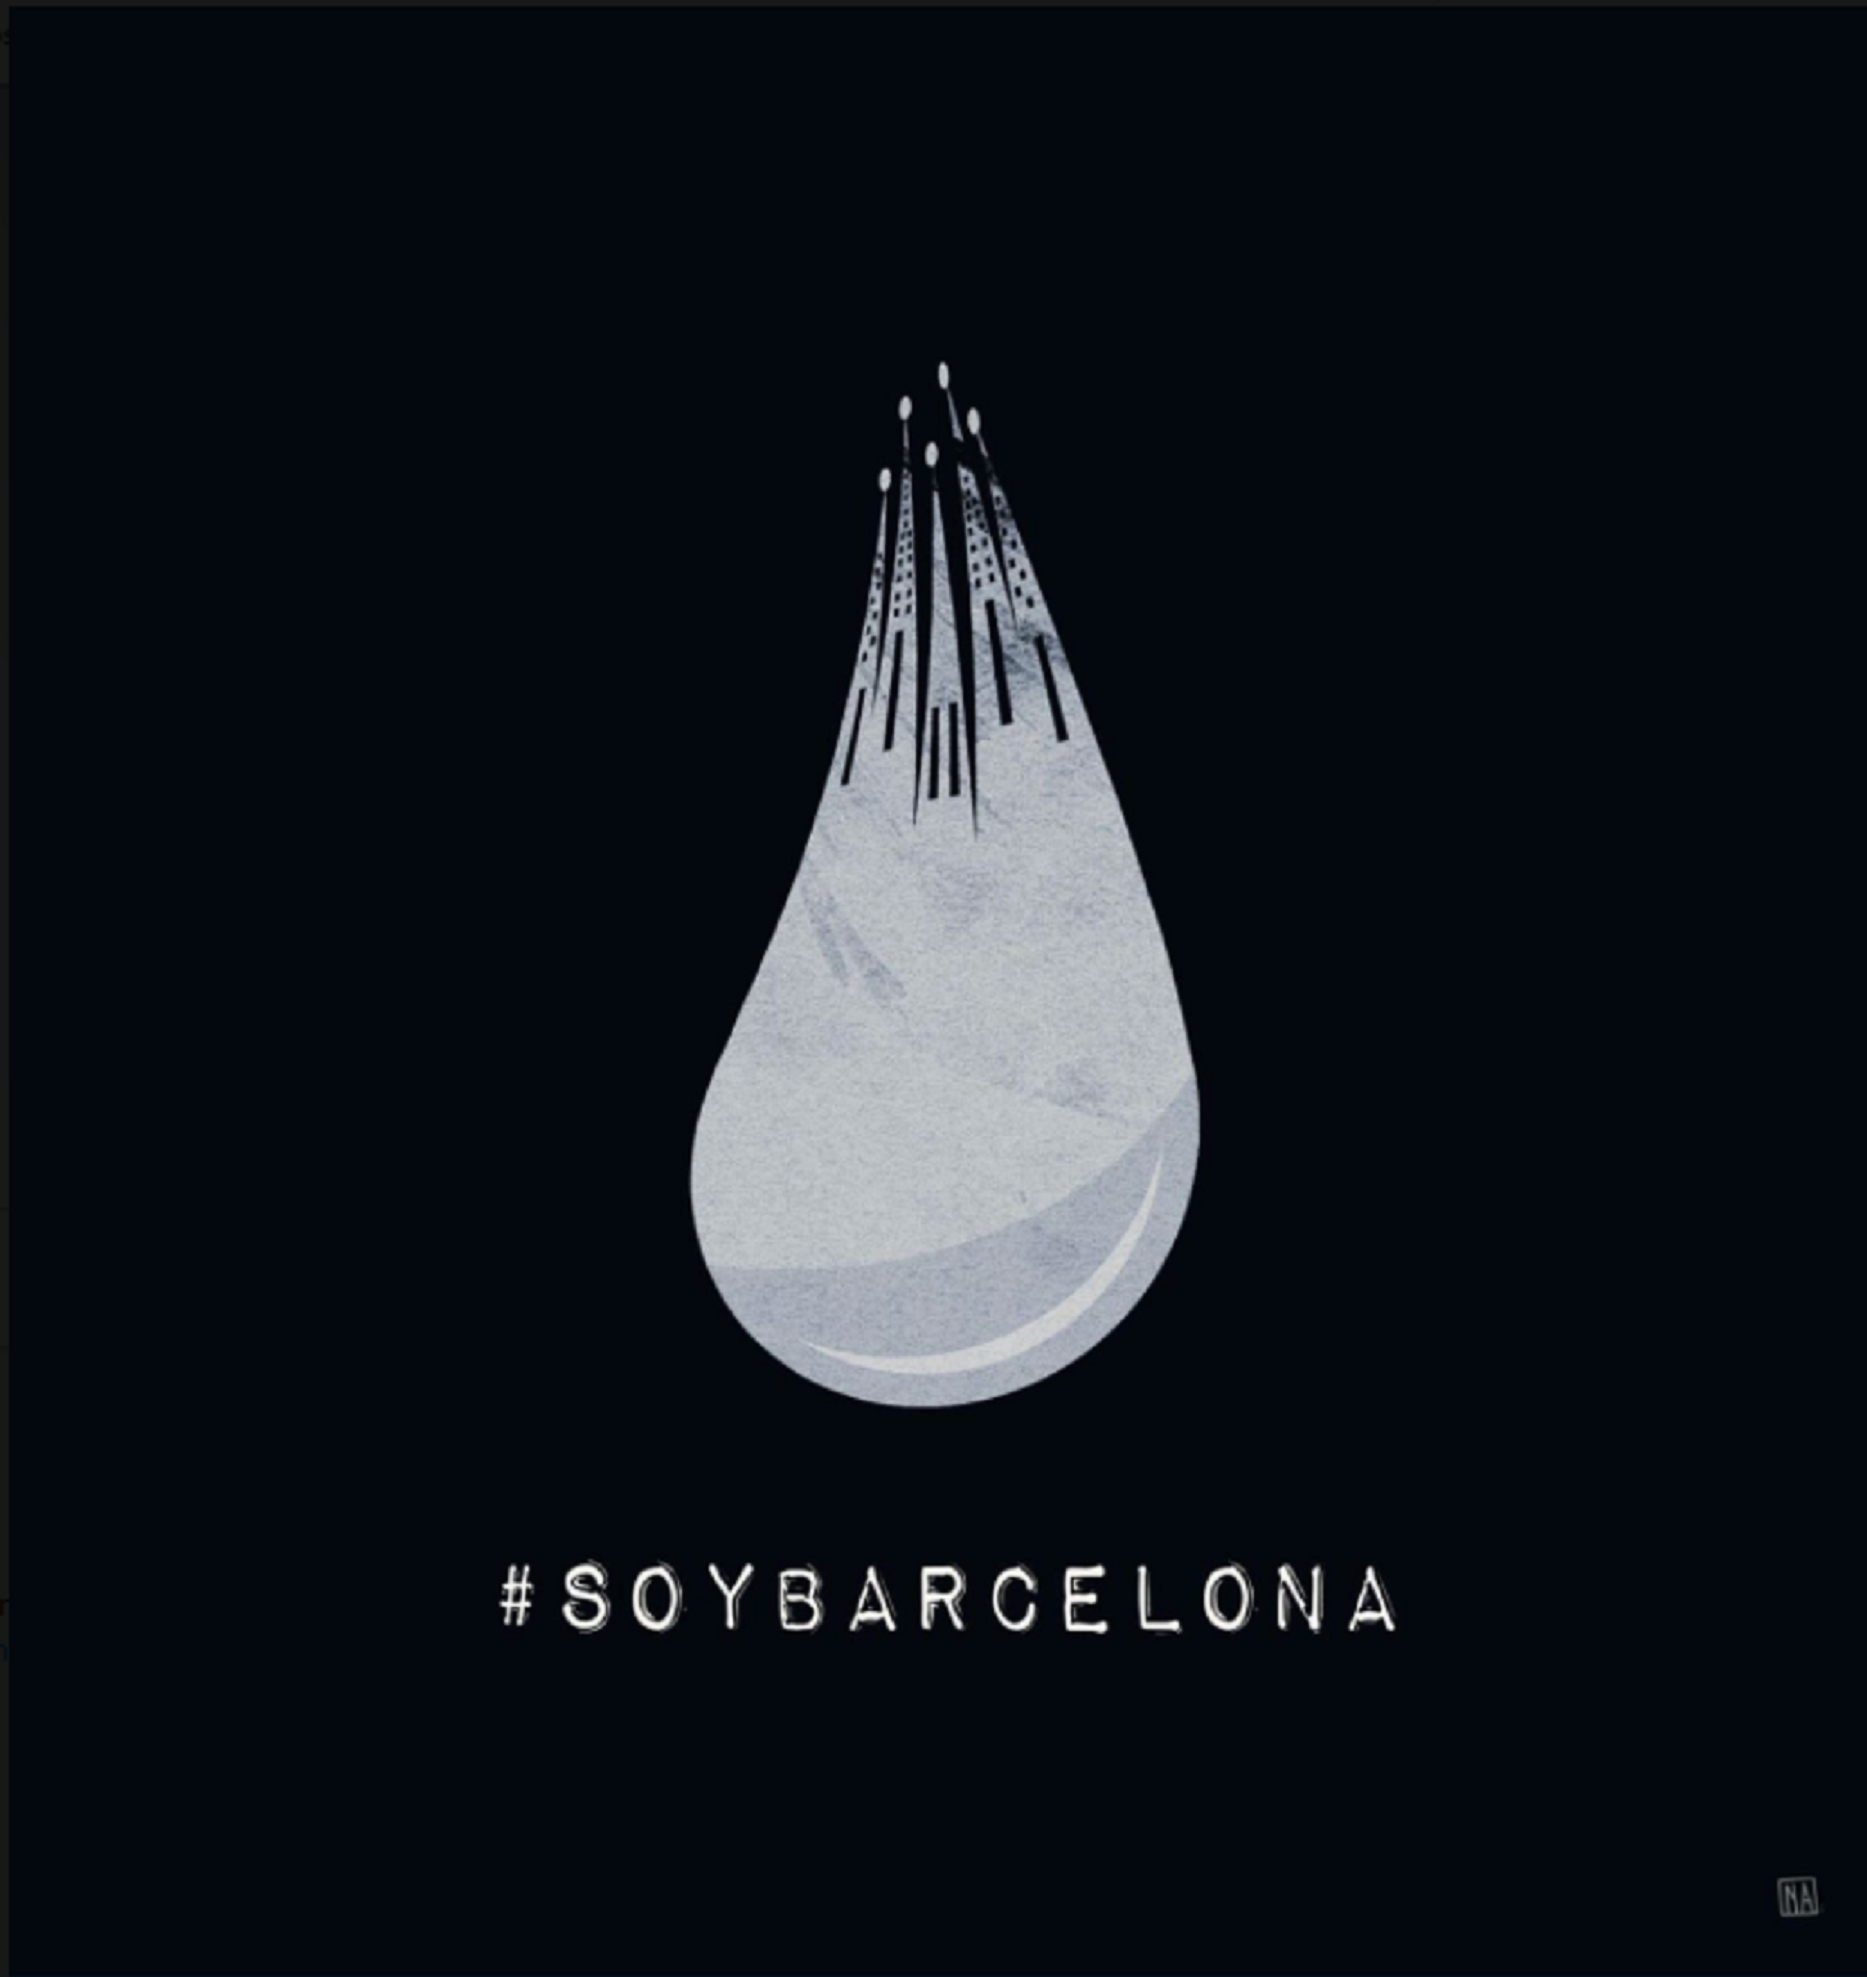 Artistes i il·lustradors d'arreu del món se solidaritzen amb Barcelona